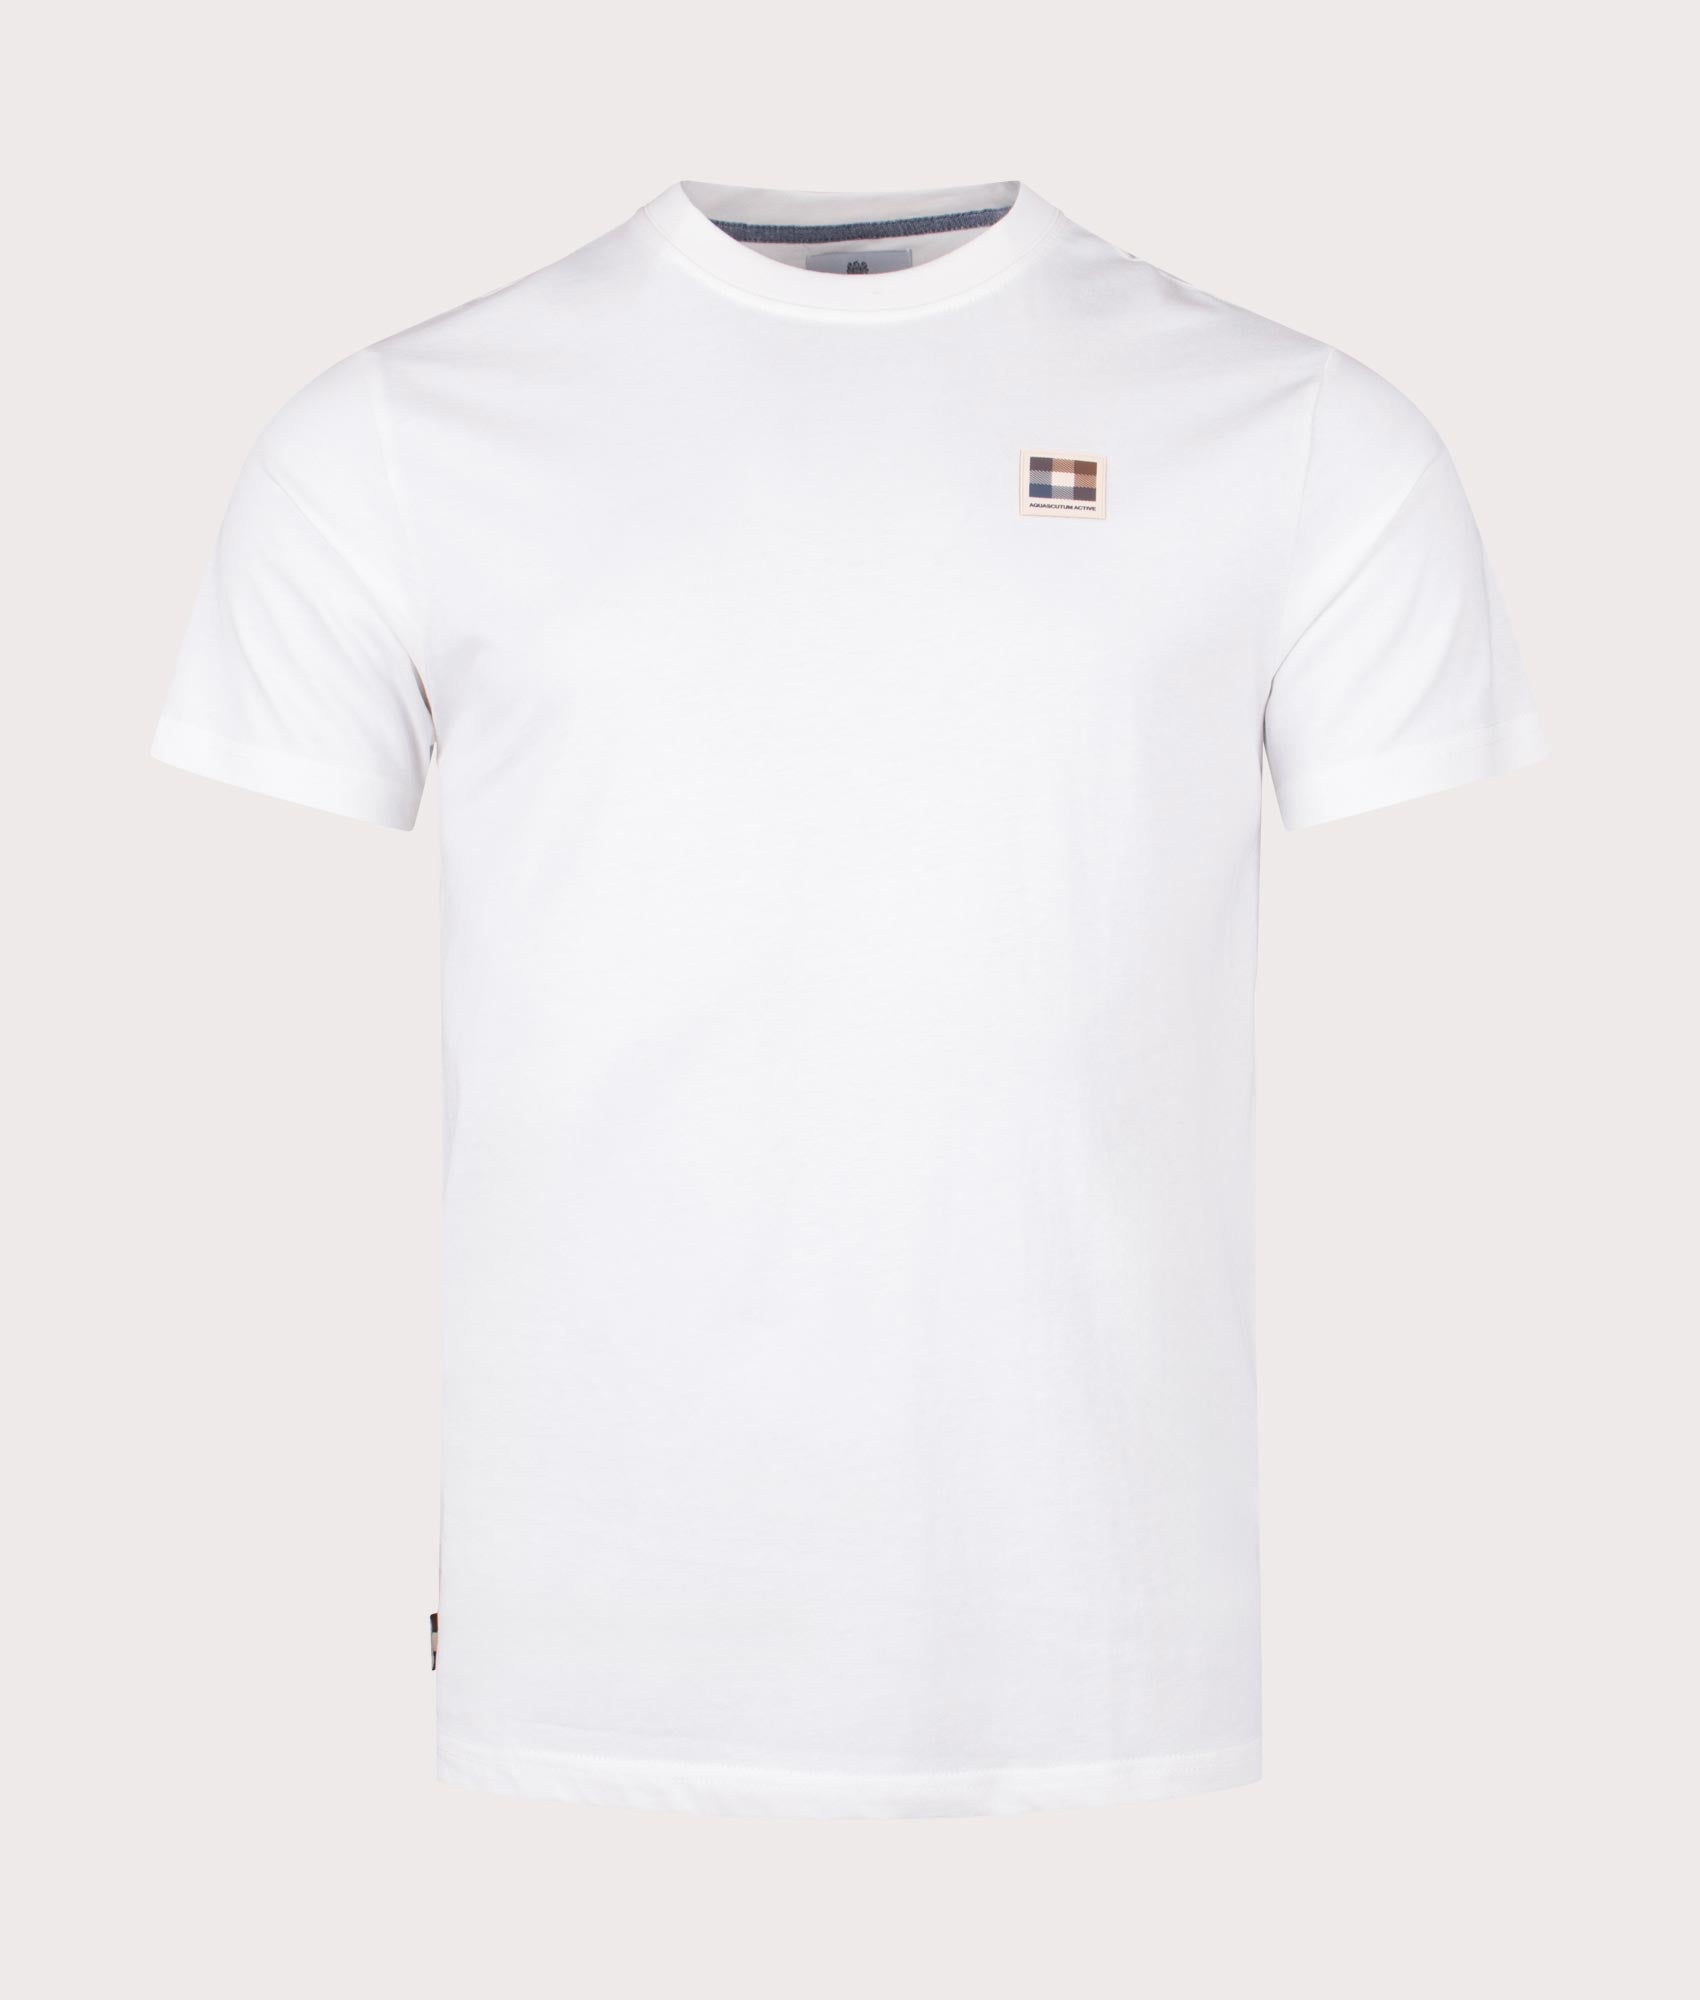 Aquascutum Mens Active Club Check Patch T-Shirt - Colour: 01 Optical White - Size: 2XL